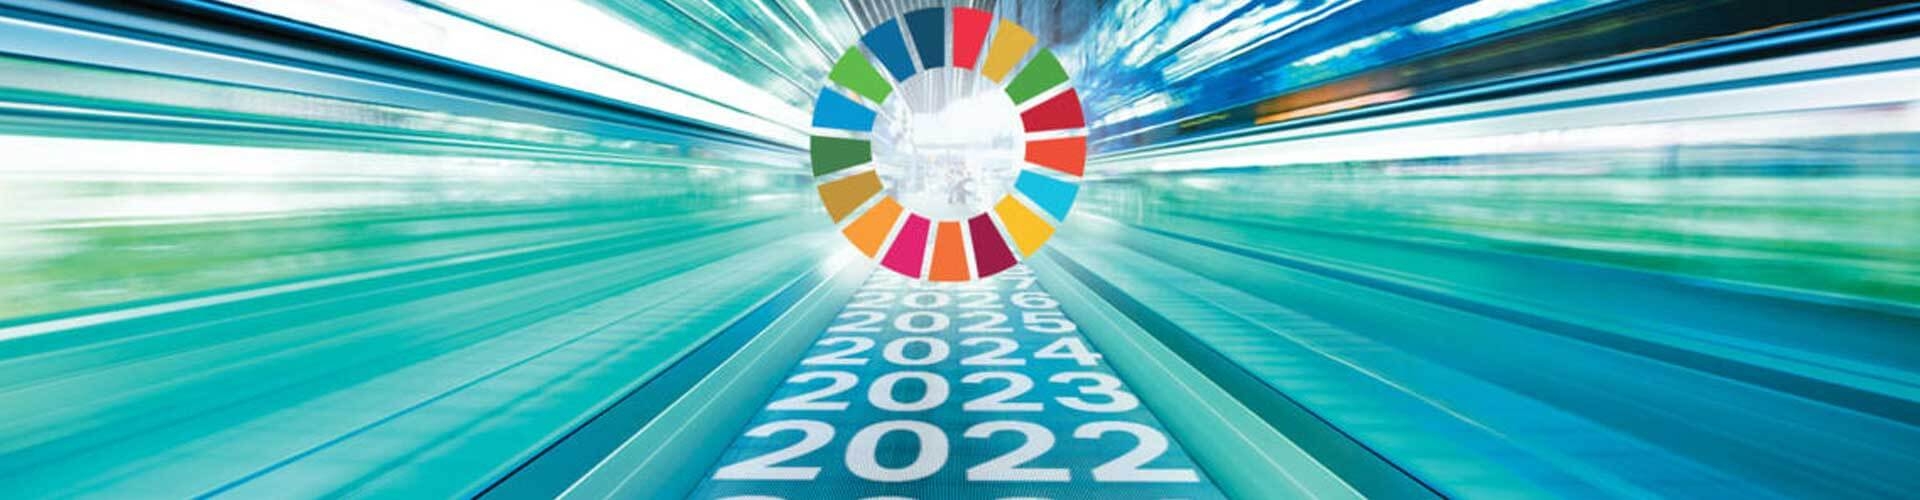 Agenda 2030 dell'ONU